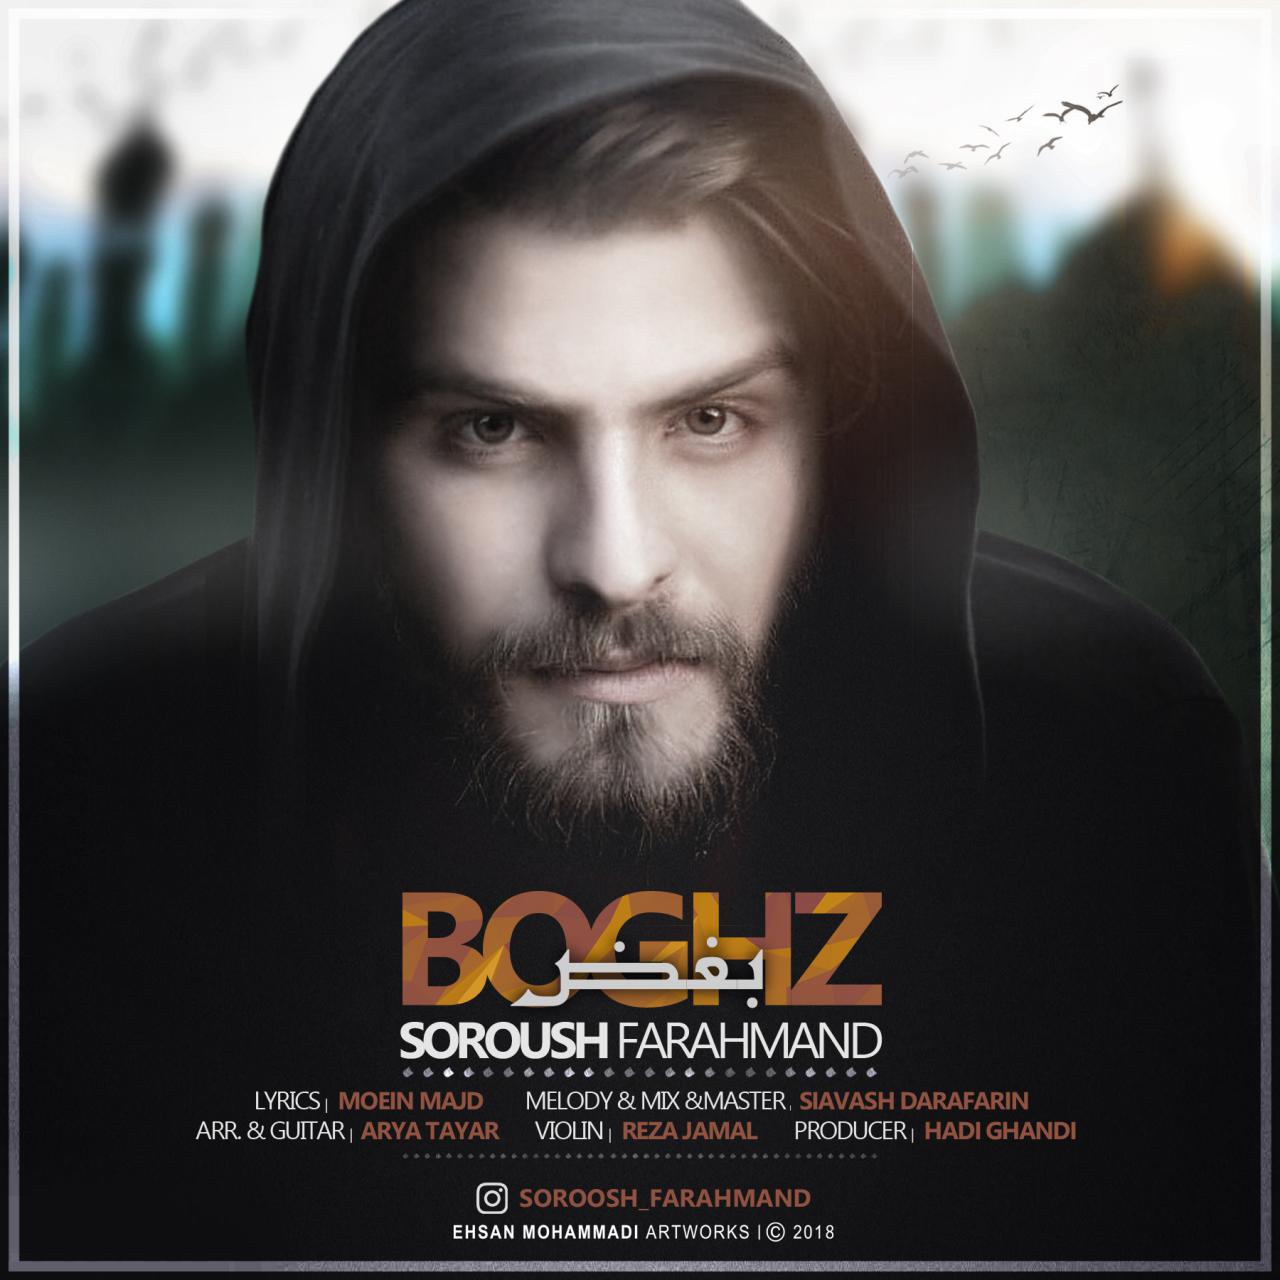  دانلود آهنگ جدید سروش فرهمند - بغض | Download New Music By Soroush Farahmand - Boghz